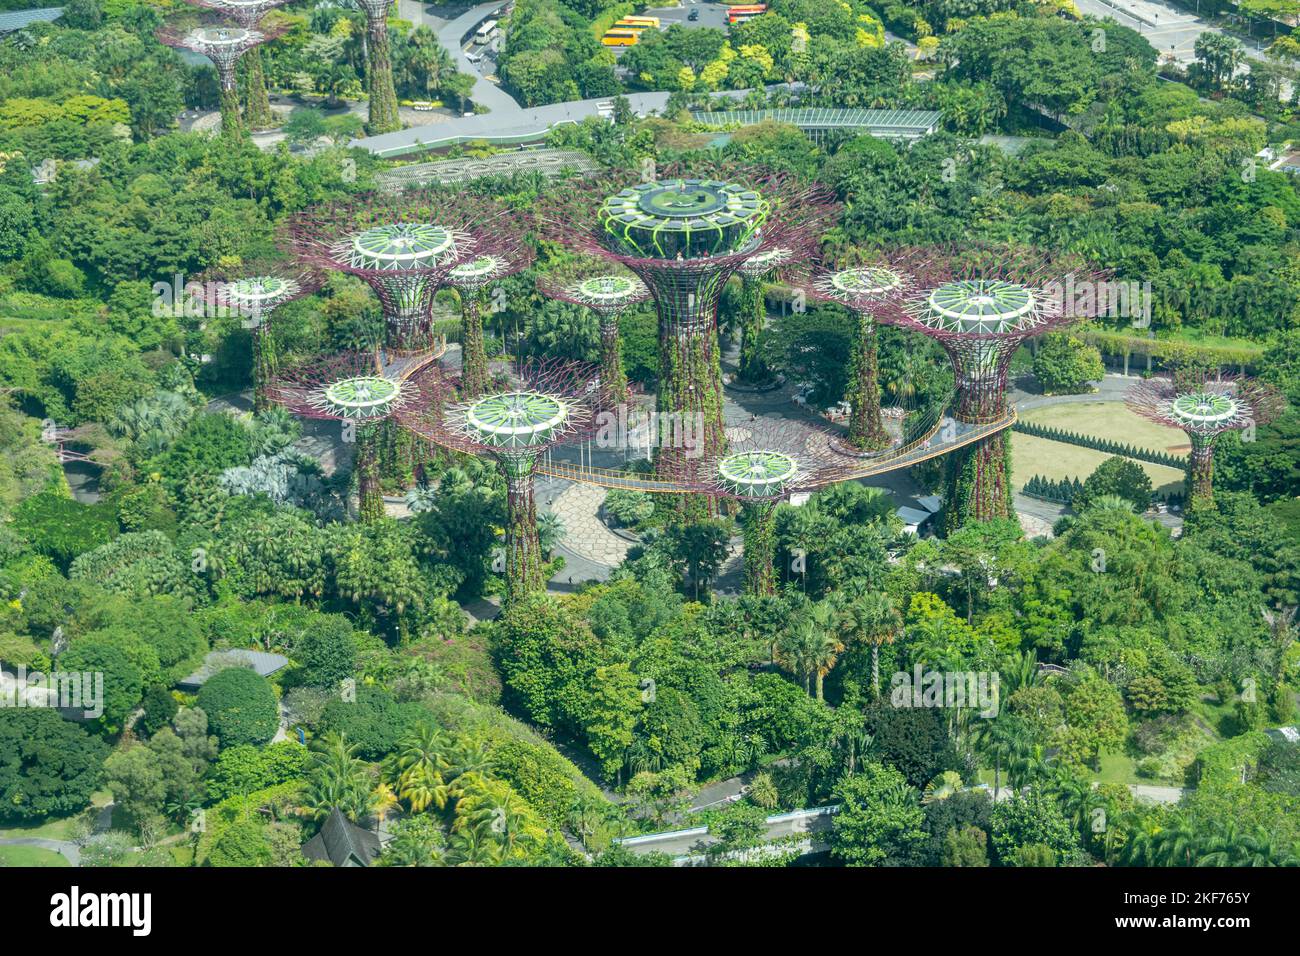 Superbäume in Gardens by the Bay, Singapur. Die baumähnlichen Strukturen sind mit Umwelttechnologien ausgestattet, die die ökologische Funktion nachahmen Stockfoto